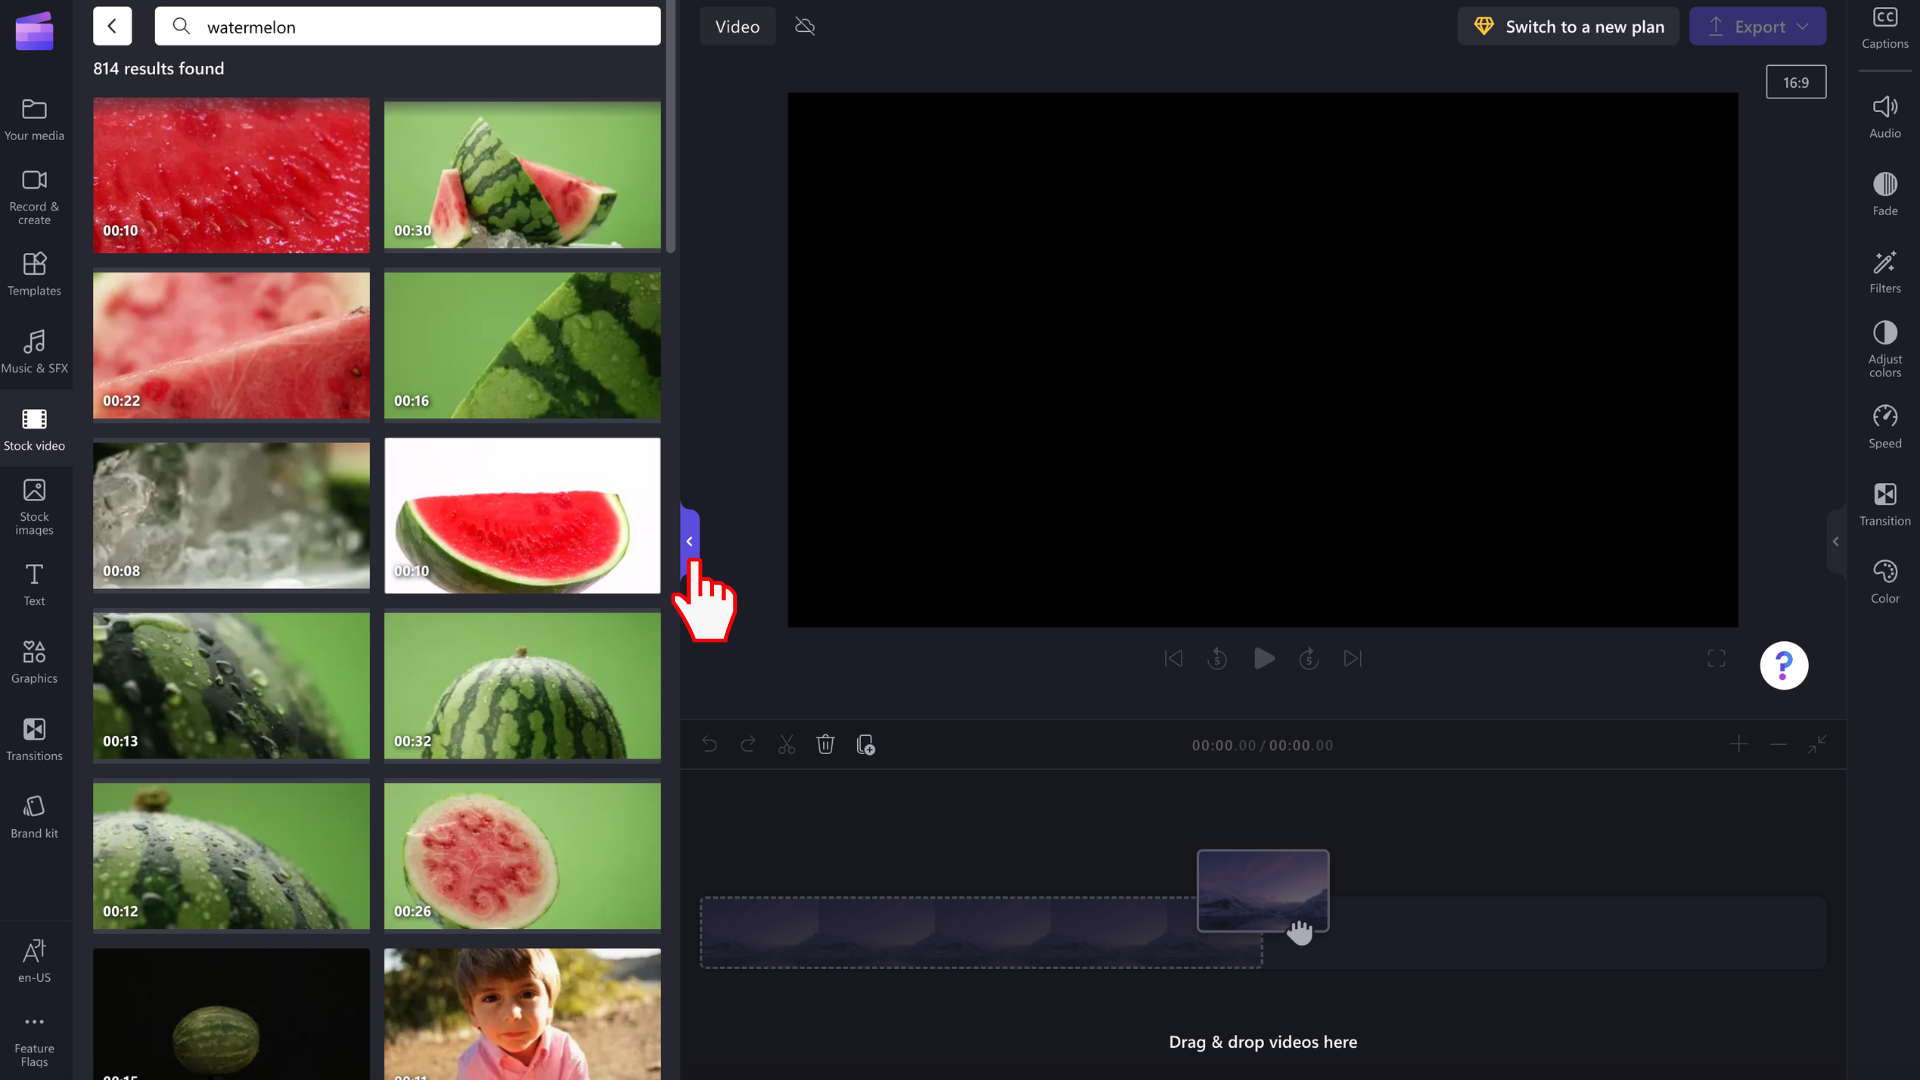 O imagine cu un utilizator glisând și fixând un videoclip în cronologie.